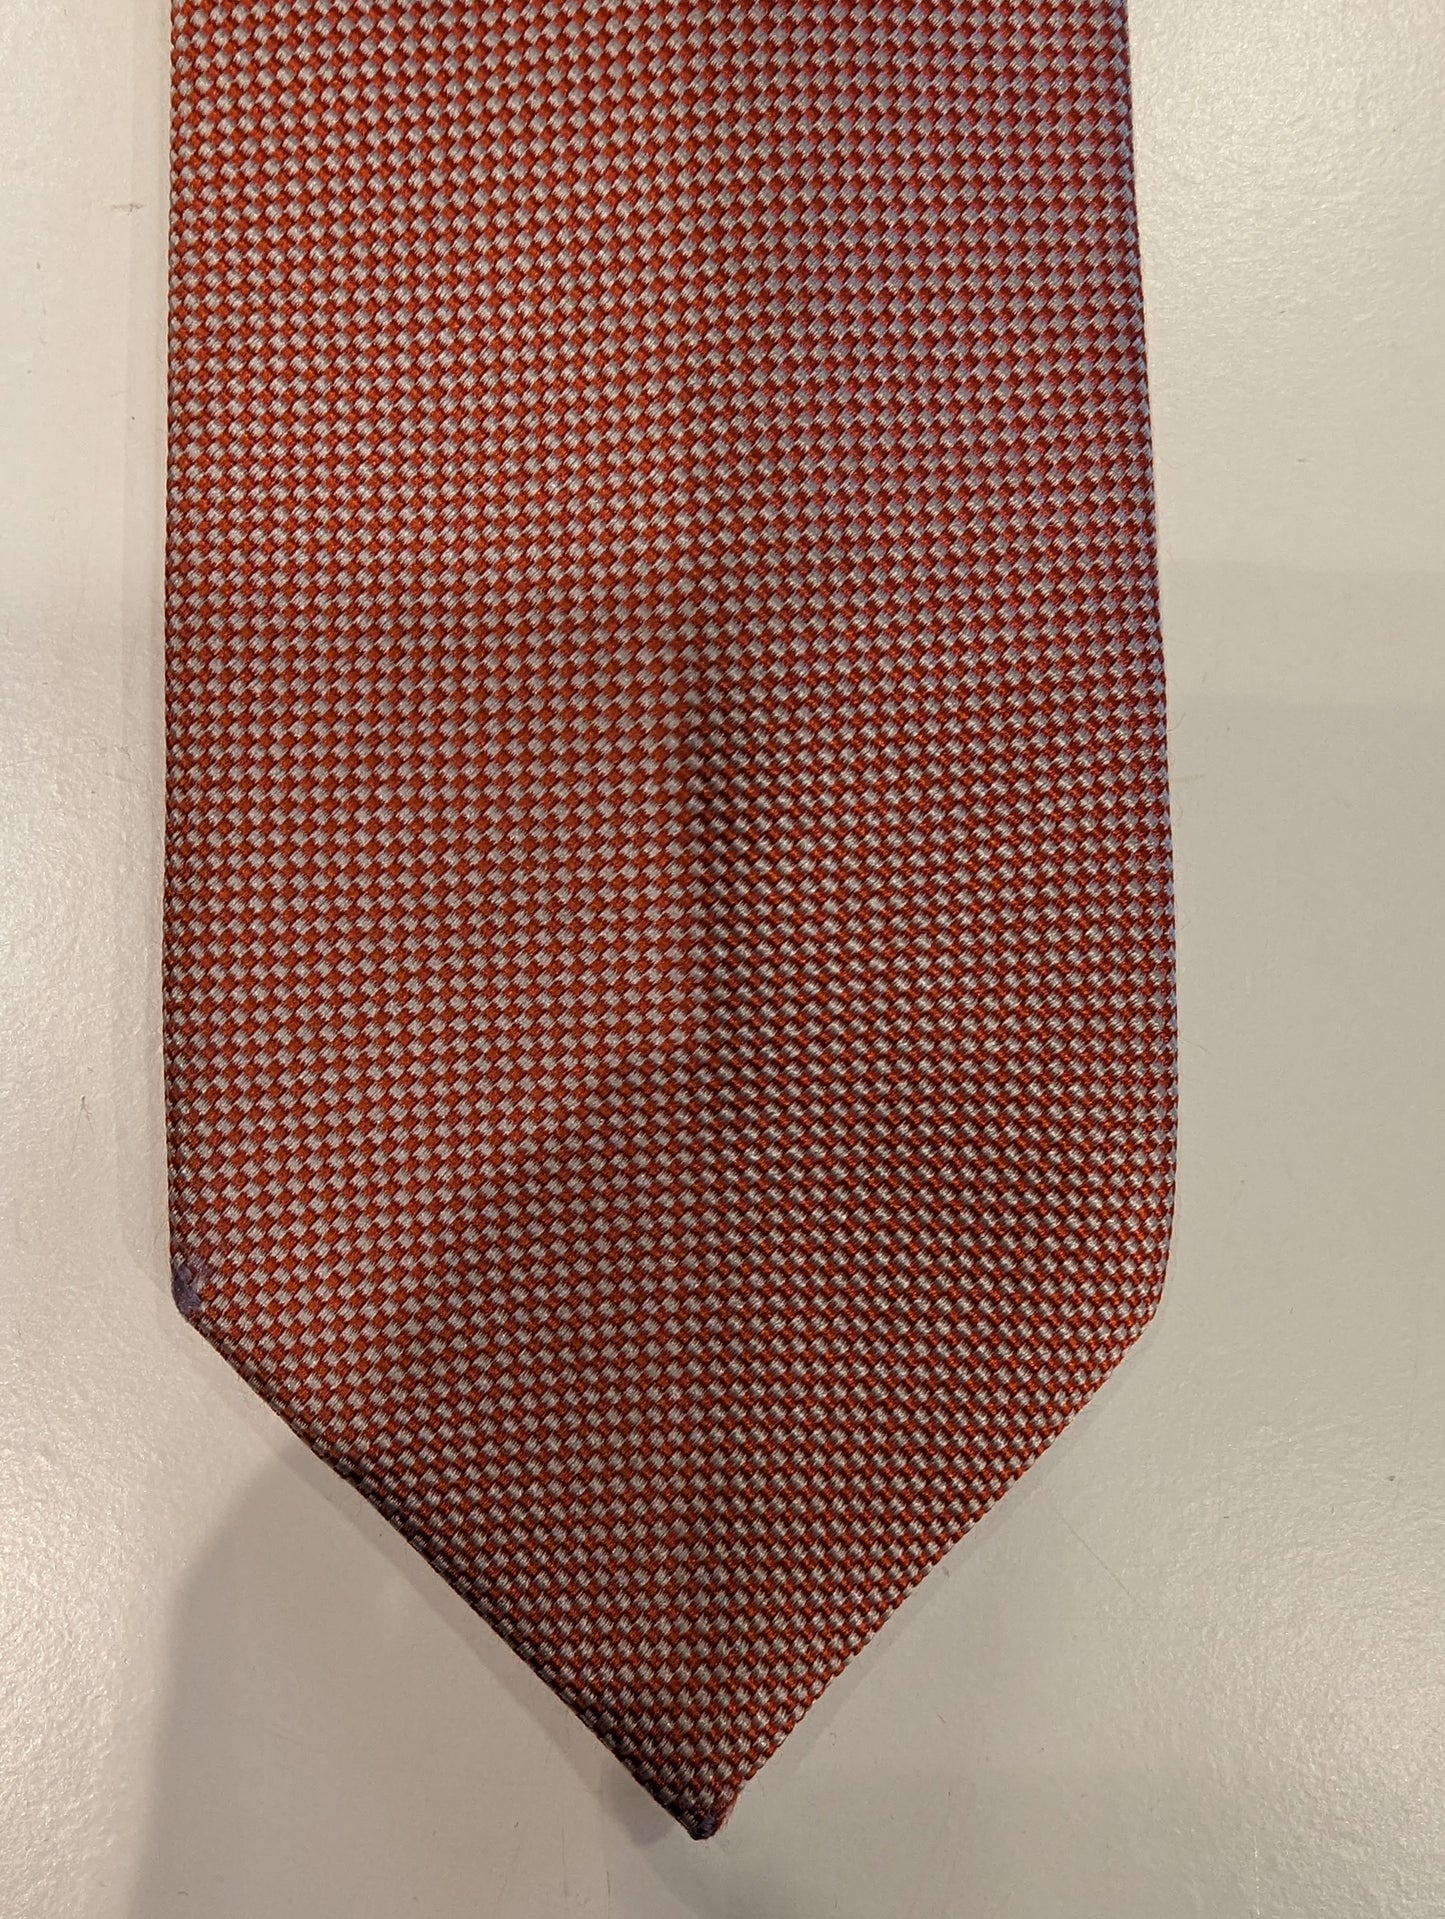 Cravatta di seta di Michaelis. Motivo arancione bianco.